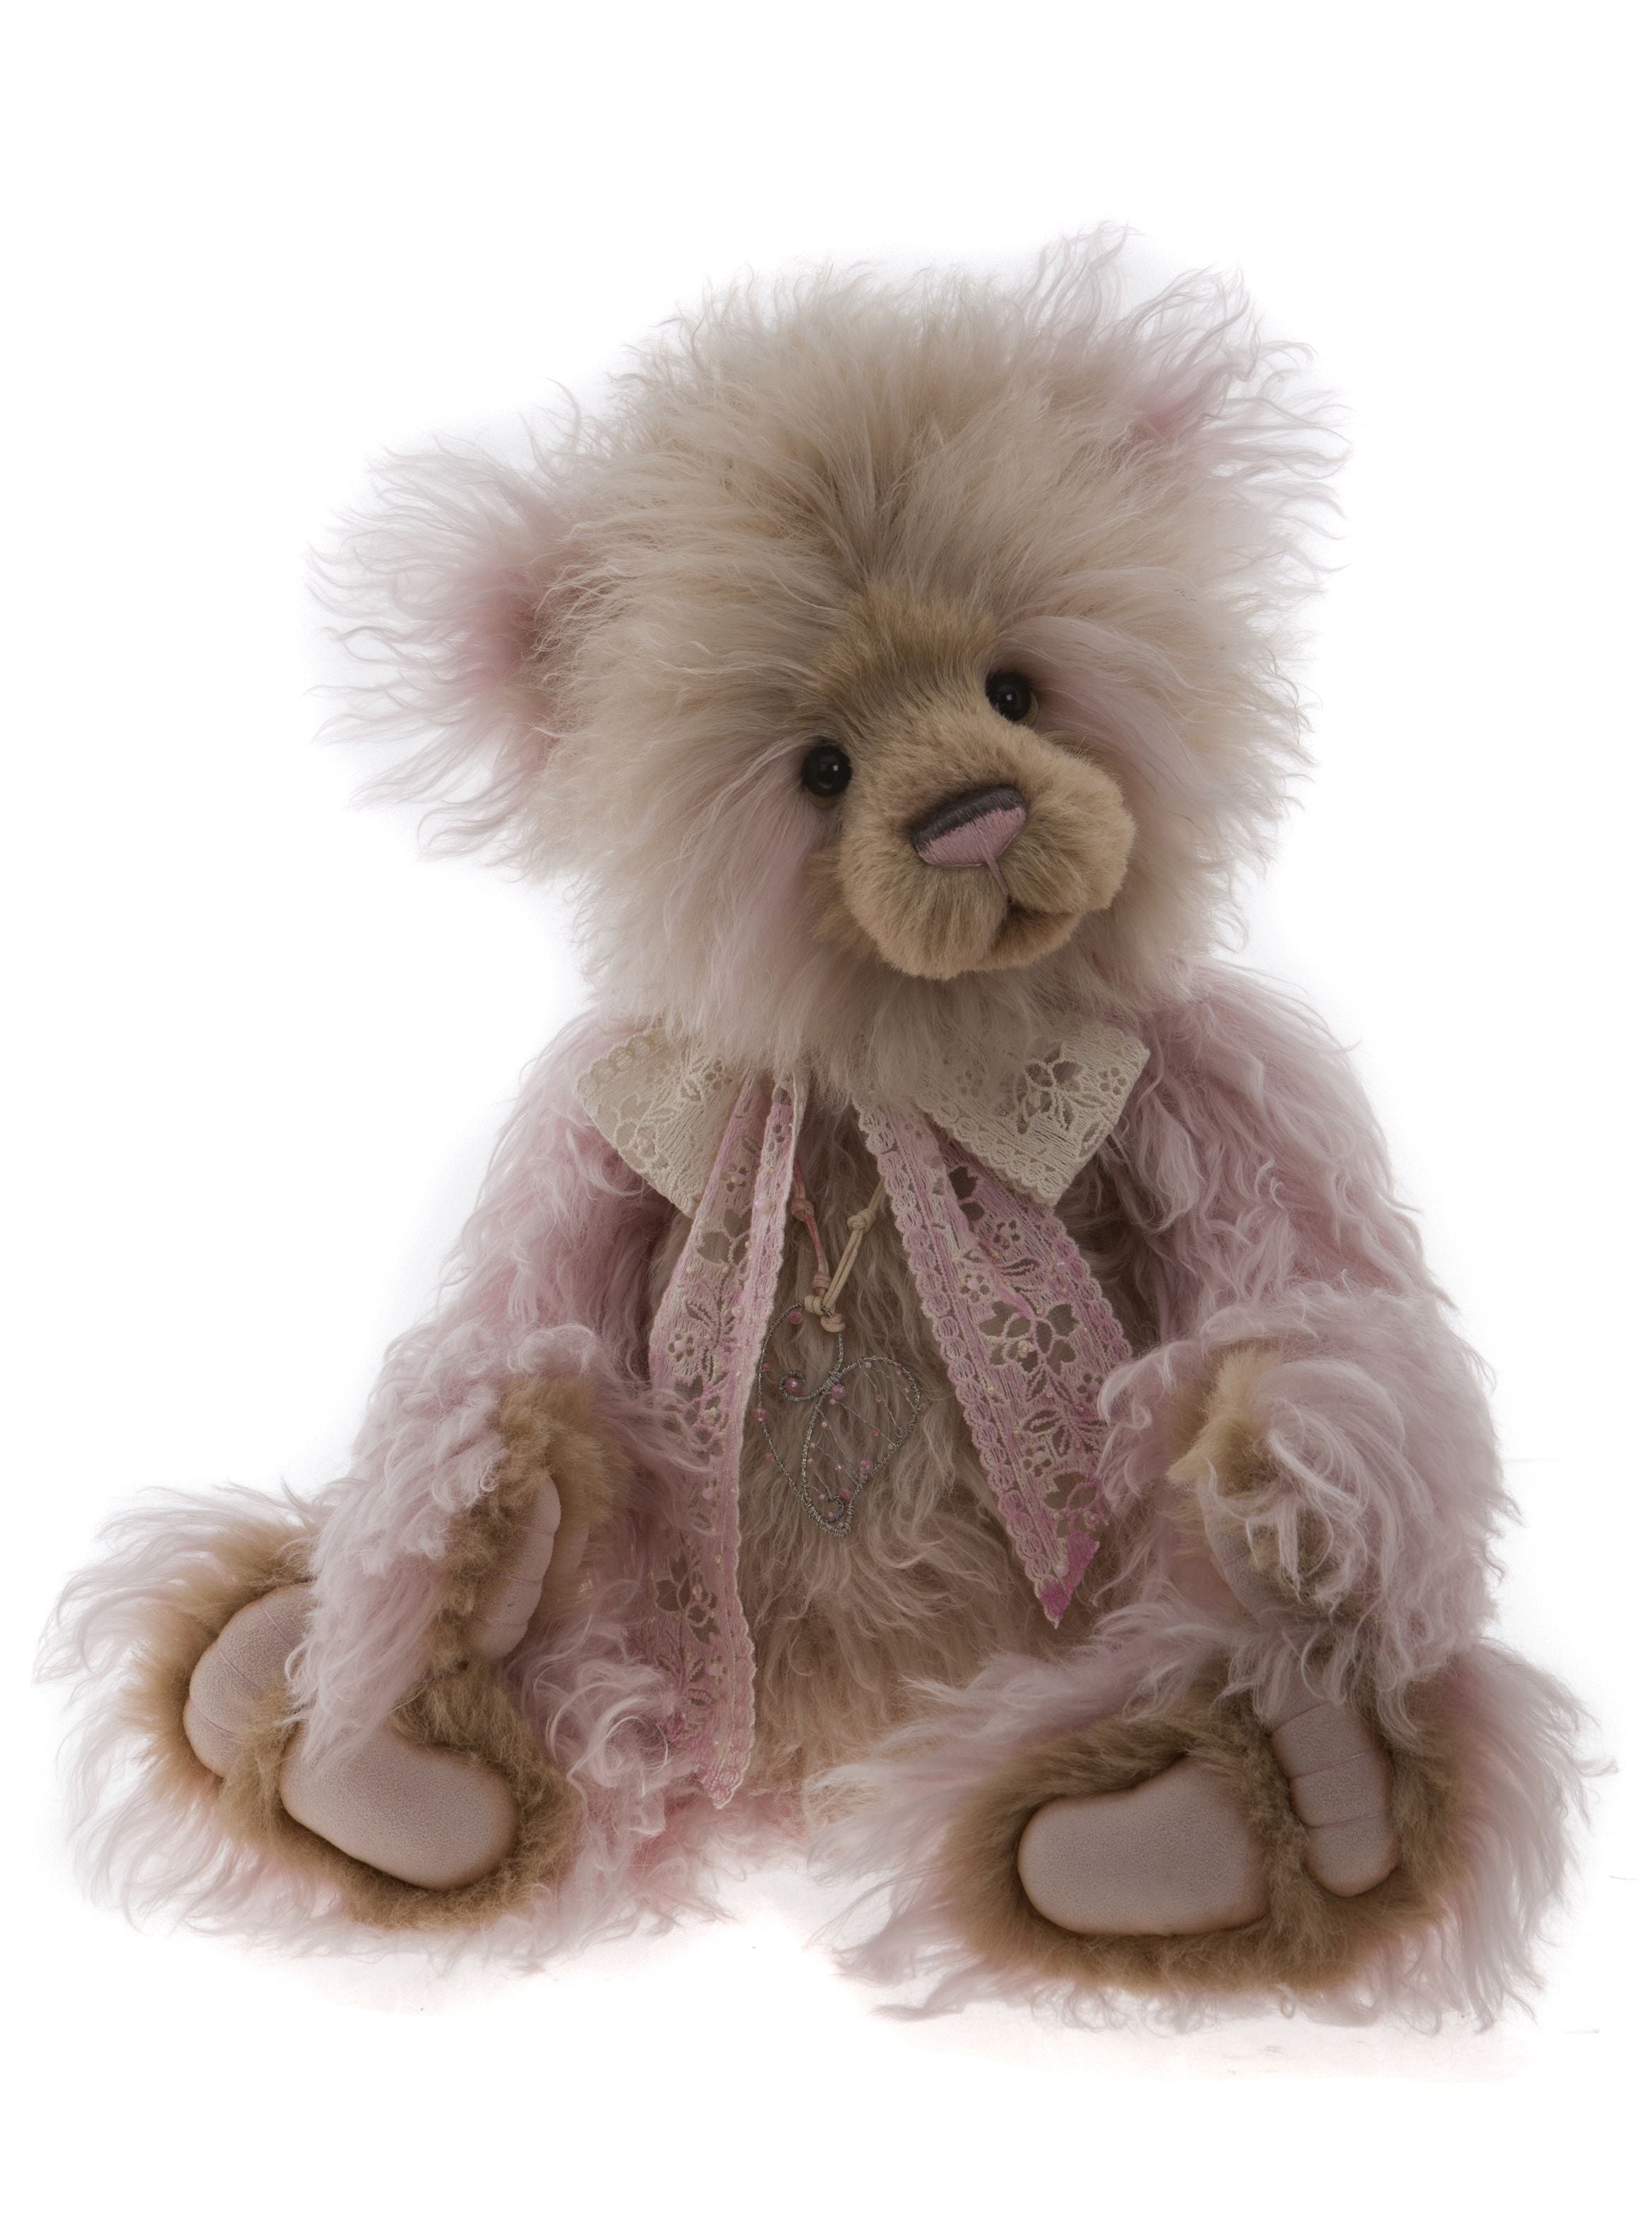 mohair teddy bears for sale